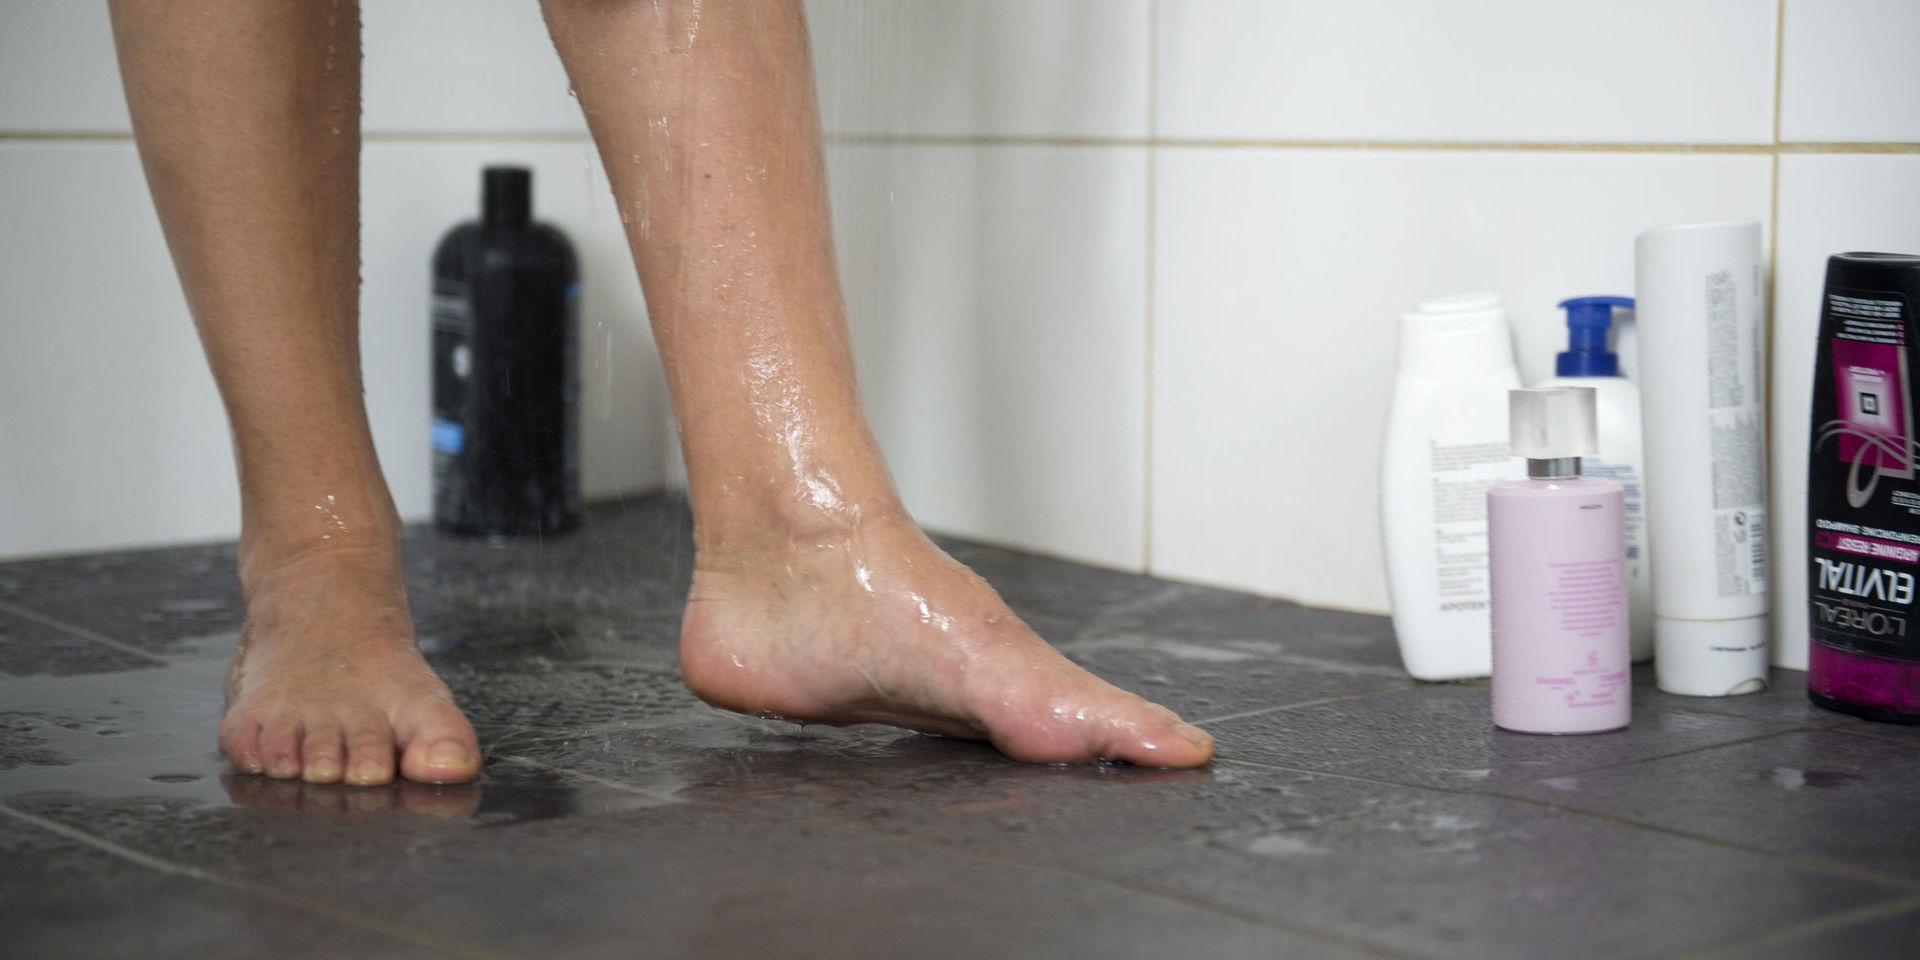 VÄSTERÅS 20130421 
En kvinna duschar. På golver står olika flaskor med tvål, schampo och balsam.
Foto: Fredrik Sandberg / SCANPIX / Kod 10180 


